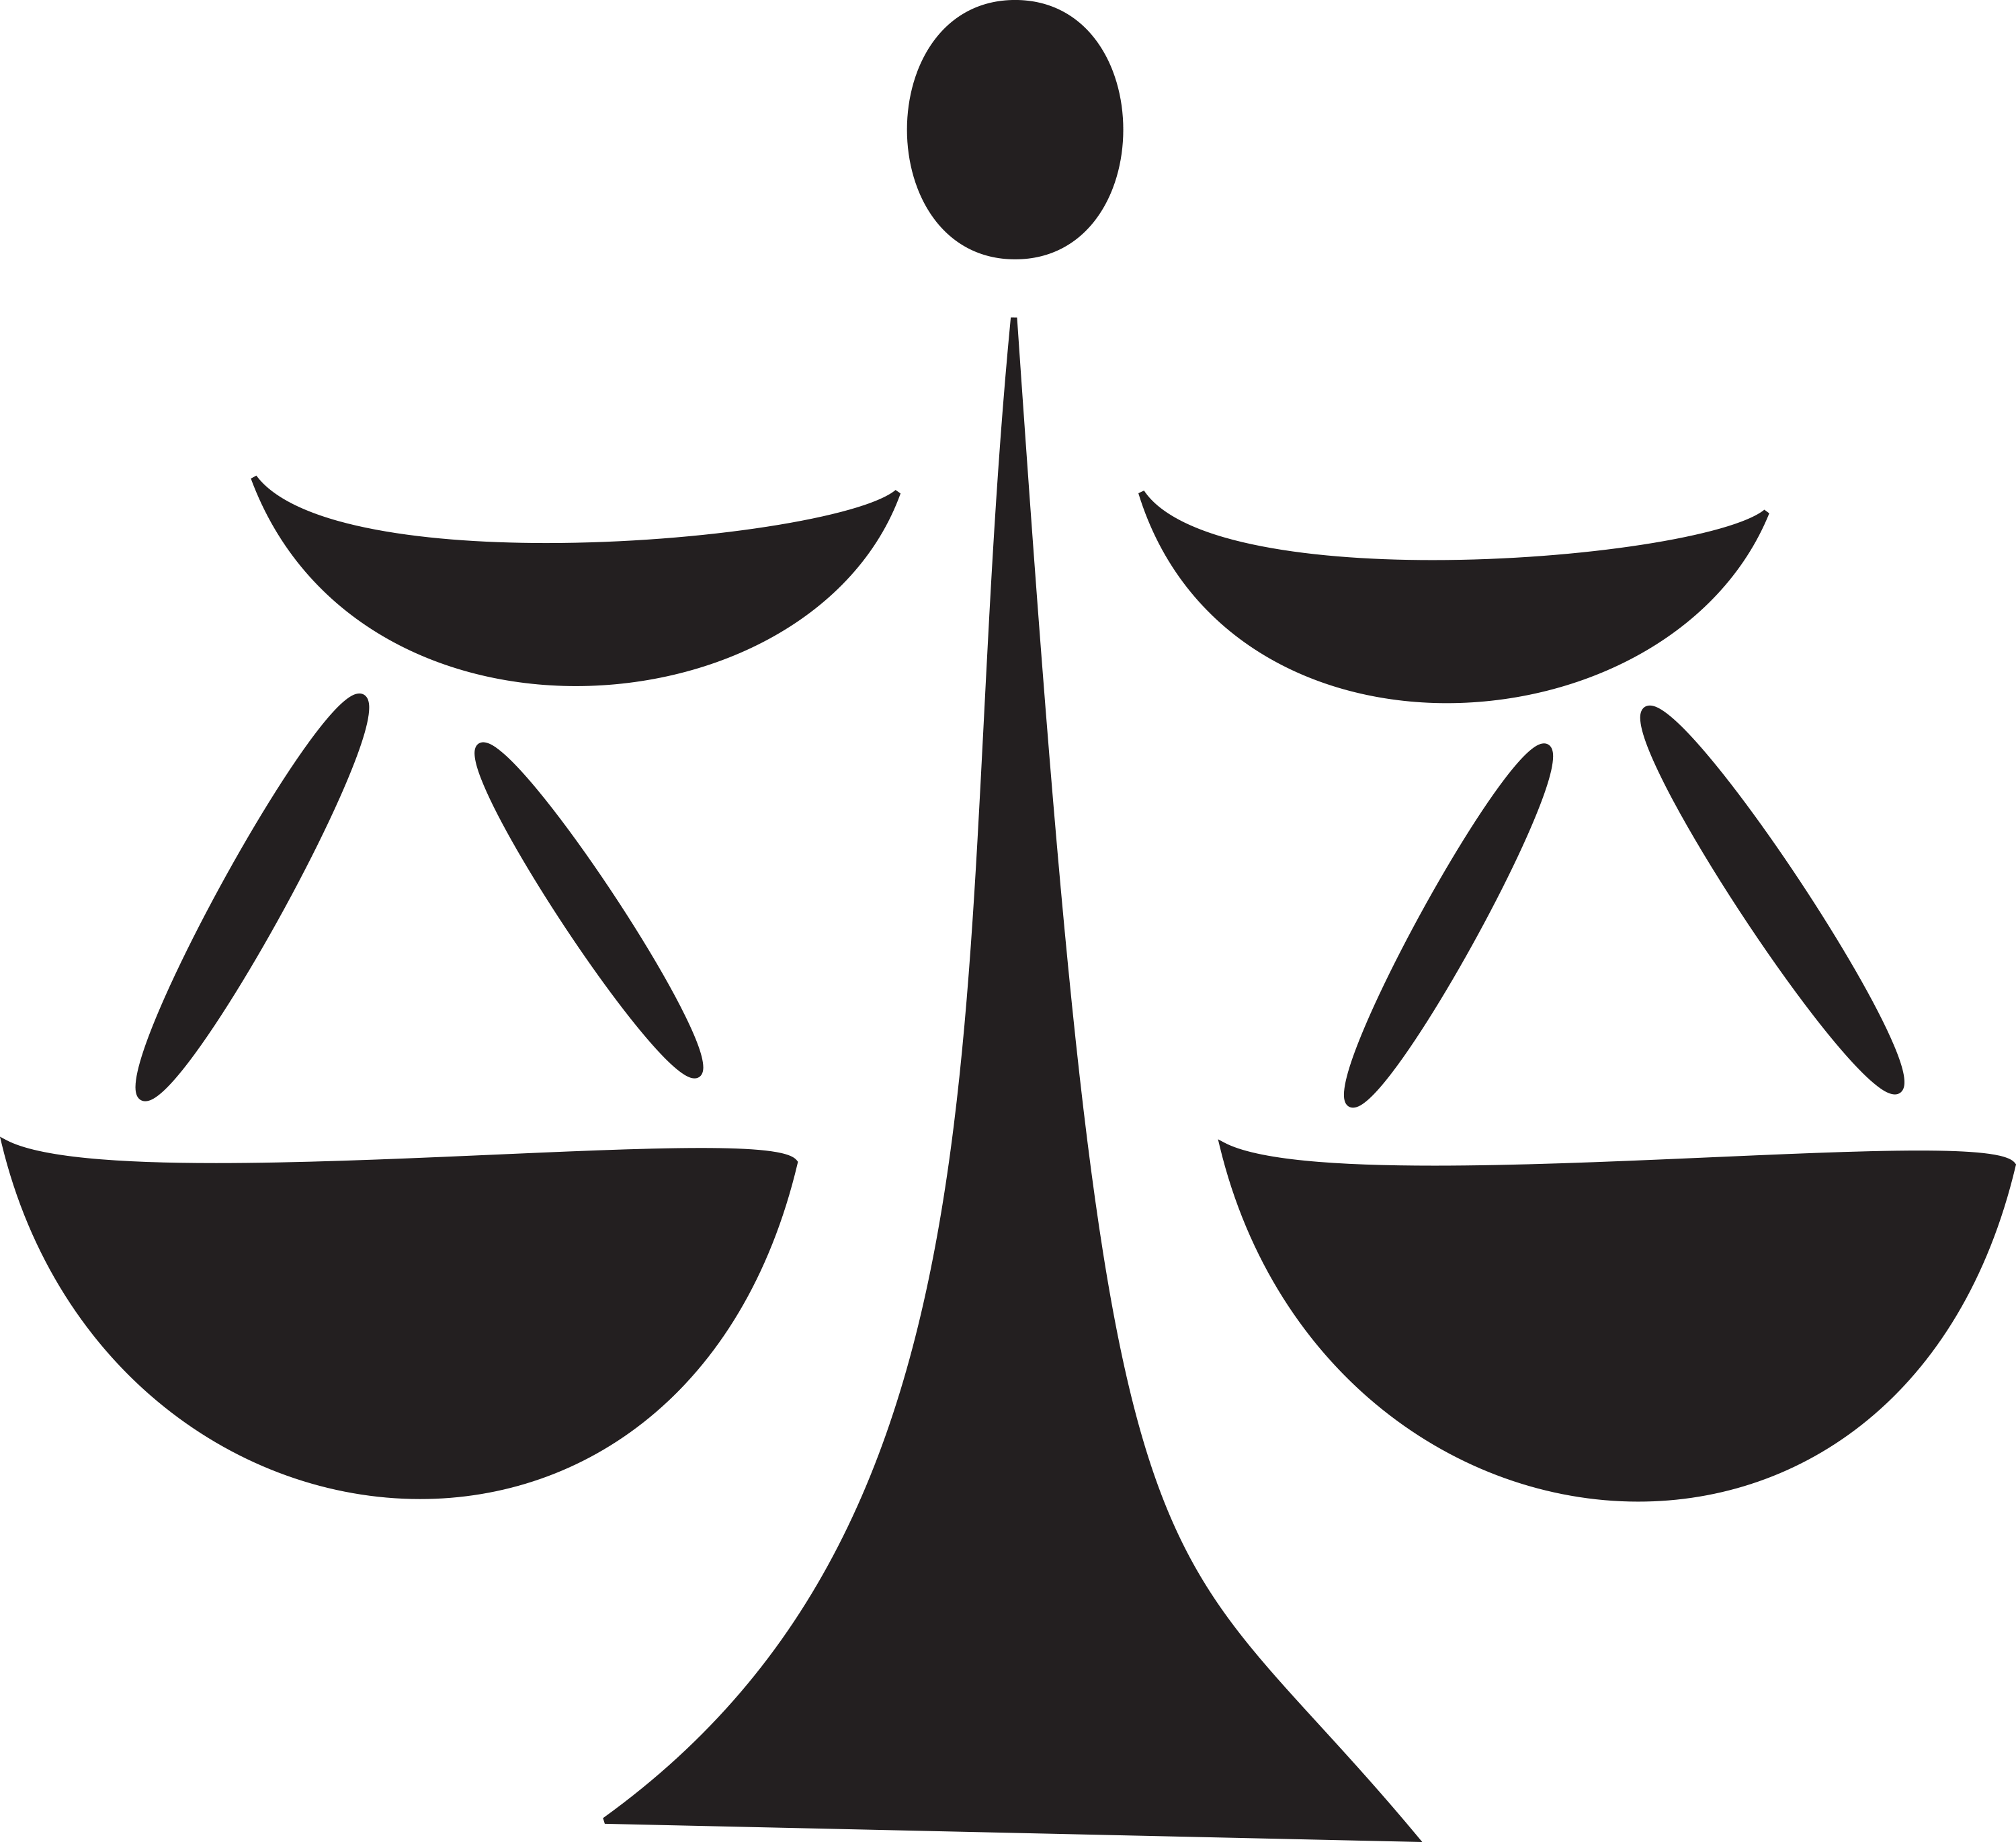 illustration-of-a-justice-symbol-SBI-300691692.png